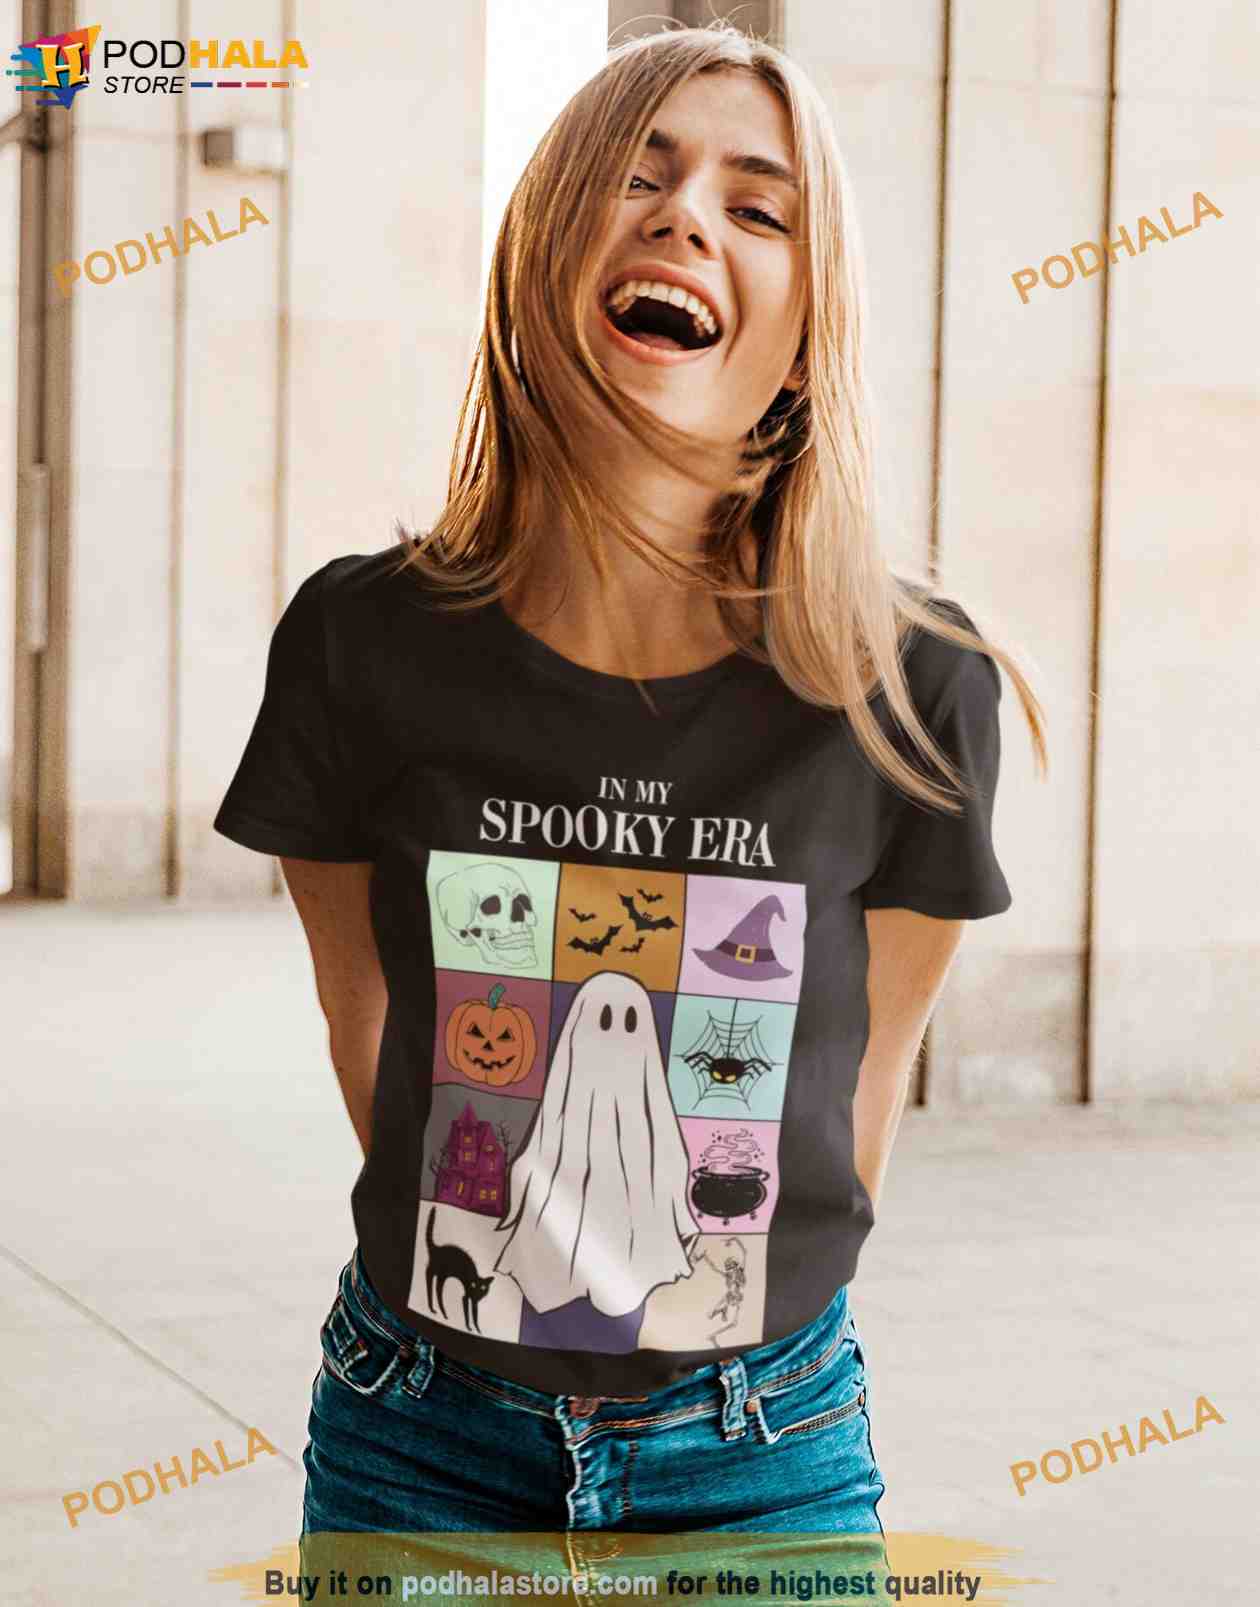 In My Spooky Era Shirt, Taylor Swift Spooky Shirt, Taylor Swift